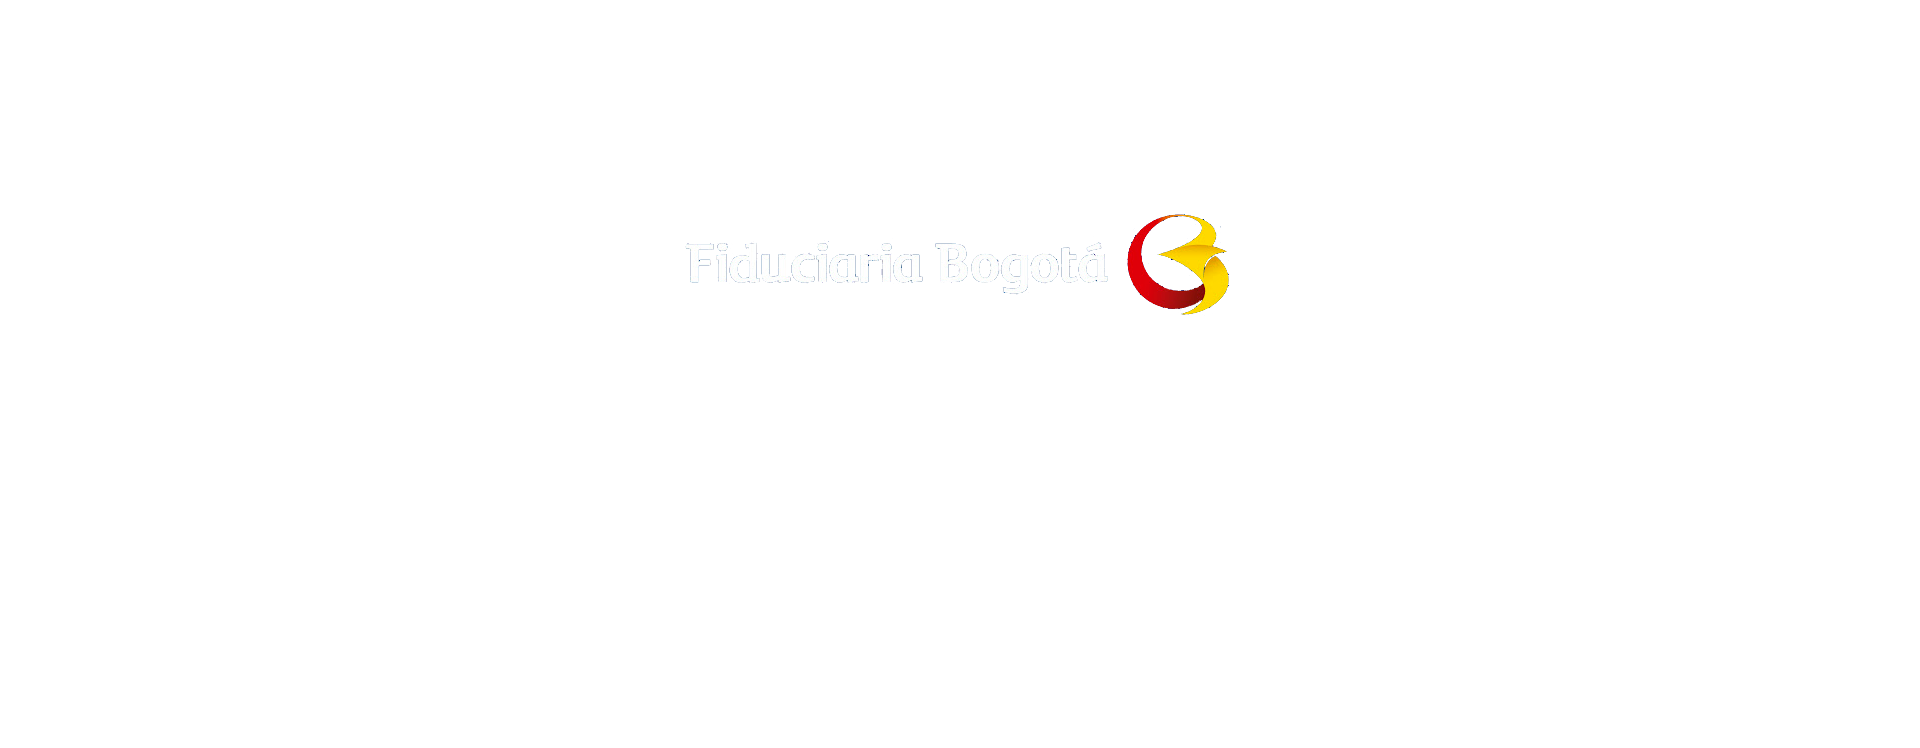 Fiduciaria Bogotá  entró a hacer parte de Colombia Proptech, la asociación gremial que representa a las empresas tecnológicas del sector inmobiliario y constructor. Esto permitirá hacer parte de uno de los ecosistemas más grandes del país, enfocado en contribuir de forma directa al fortalecimiento y consolidación del futuro tecnológico y digital del mismo.